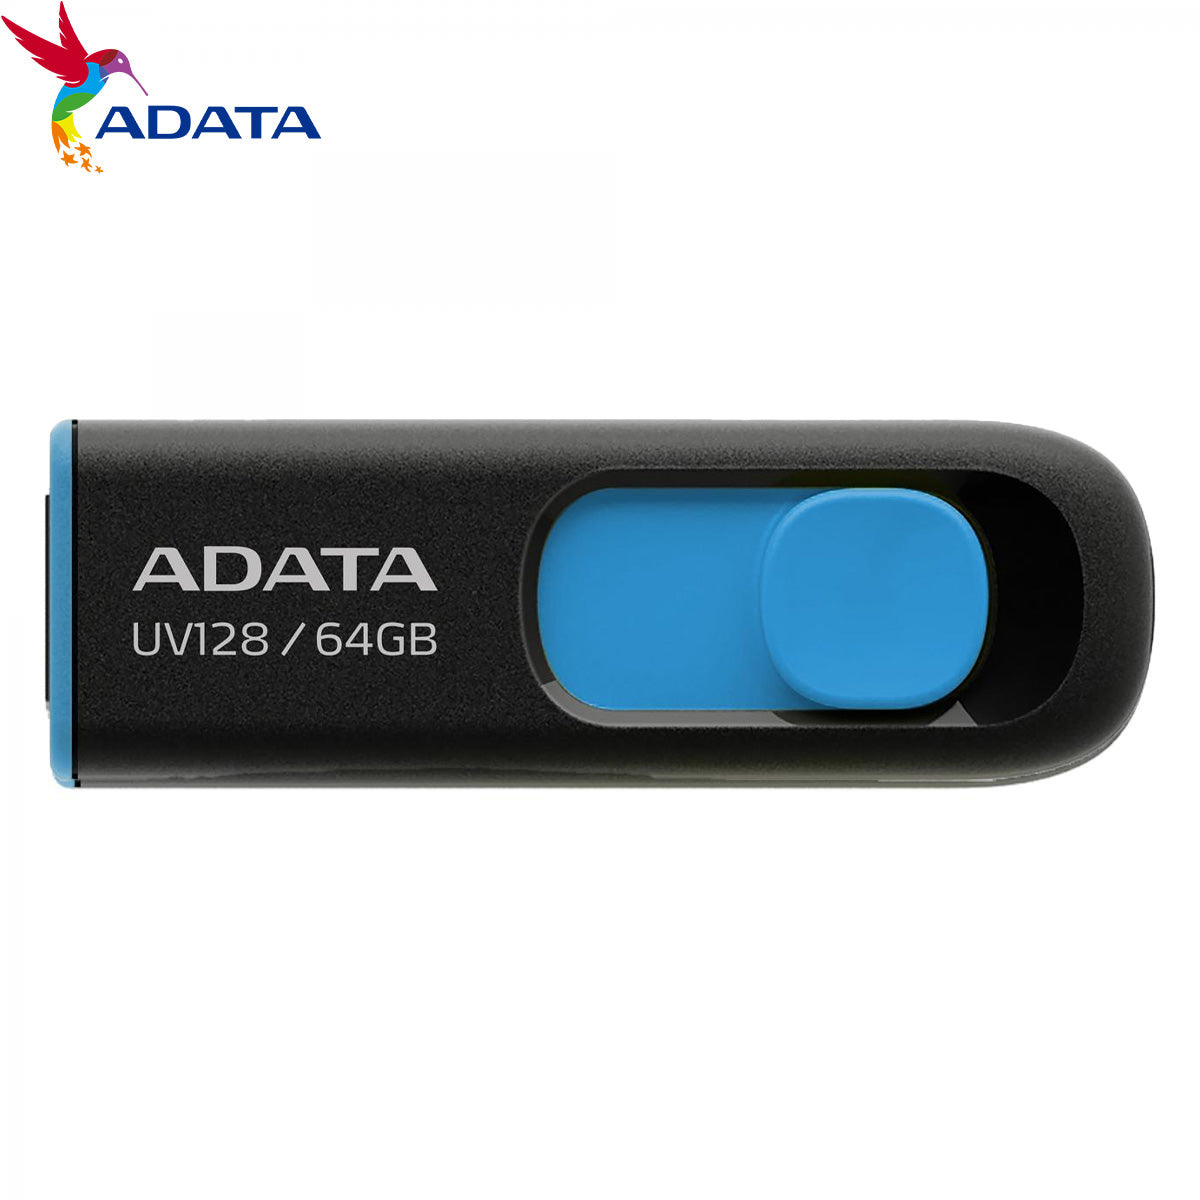 ADATA UV128 64GB BLACK+BLUE RETAIL